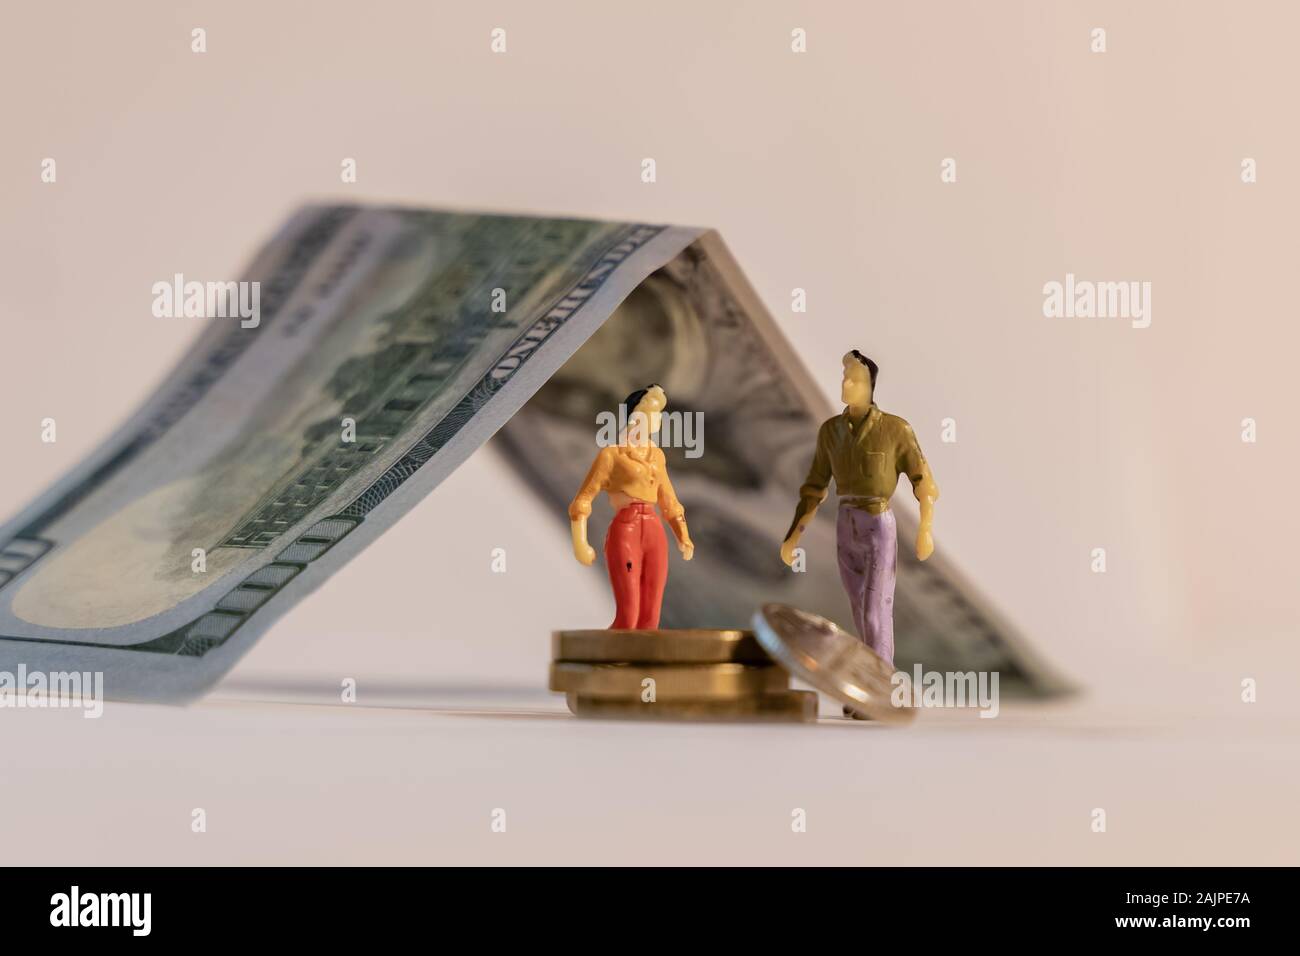 Miniatur Frau und Mann Abbildung neben Haus der Dollar Bill und Zählen von Münzen. Flache Tiefenschärfe Hintergrund. Familie Haushalt, mortga Stockfoto